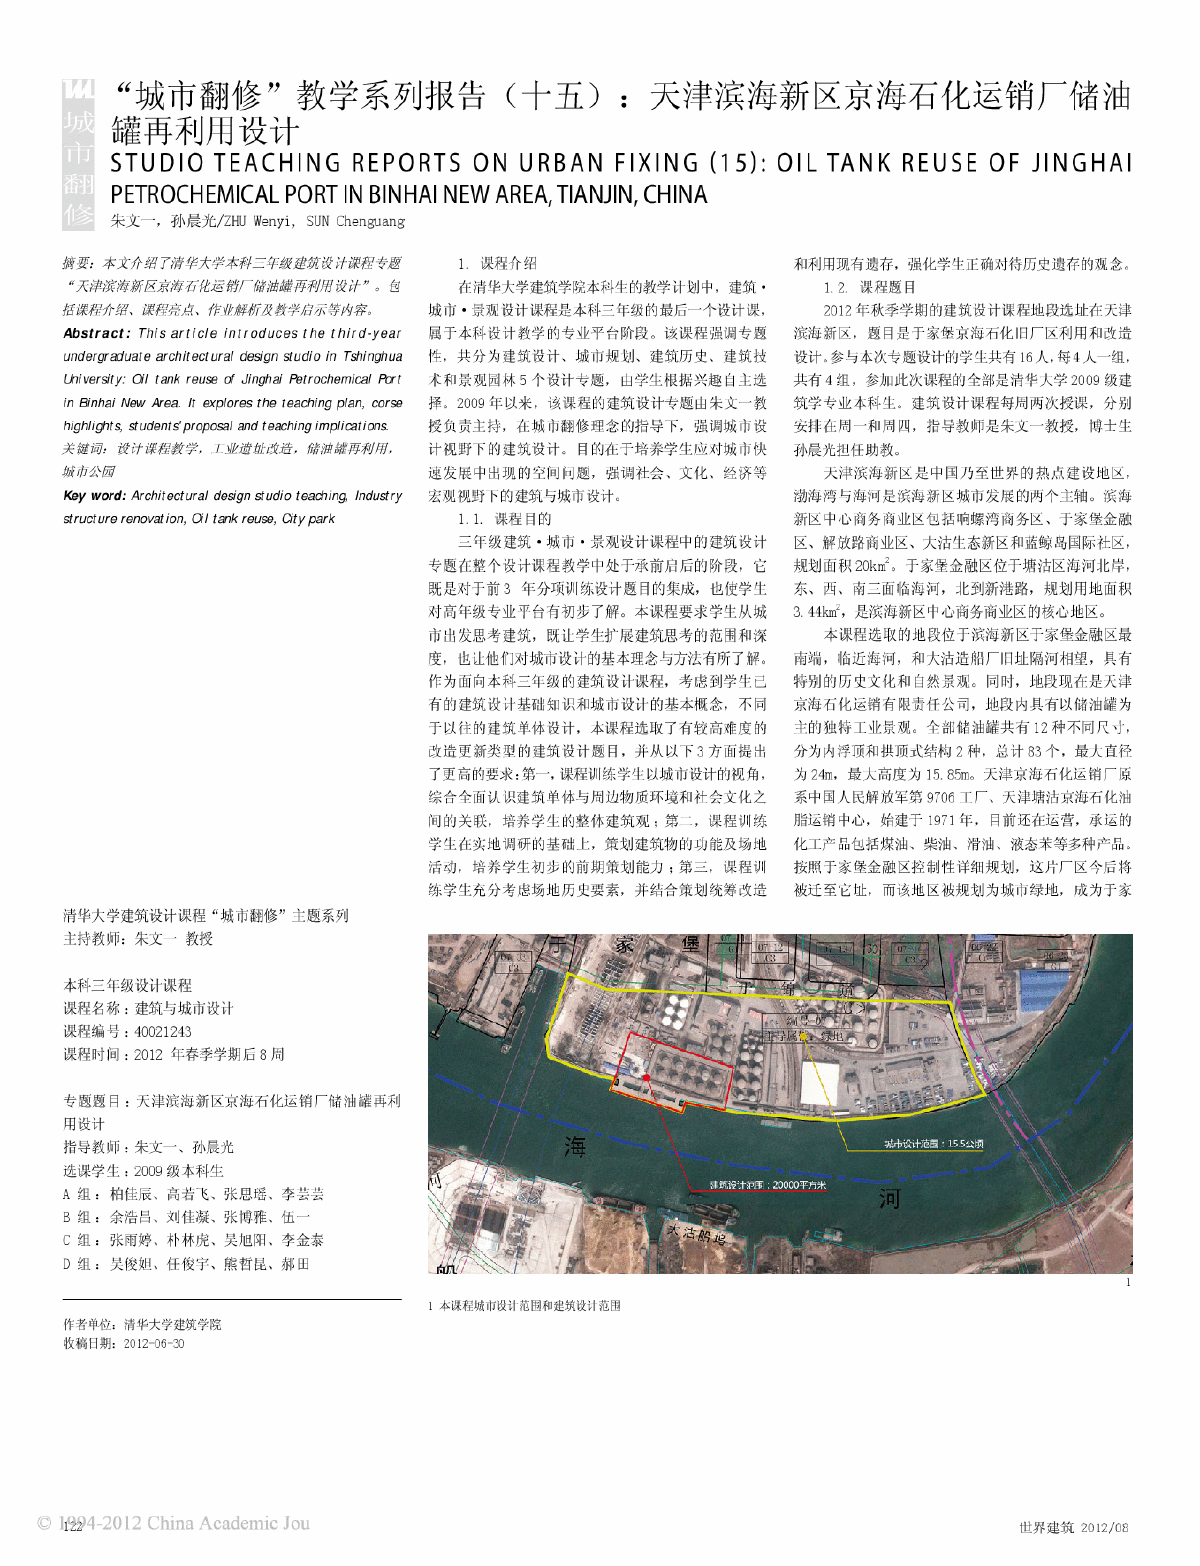 城市翻修教学系列报告十五滨海新区京海石化运销厂储油罐再利用设计